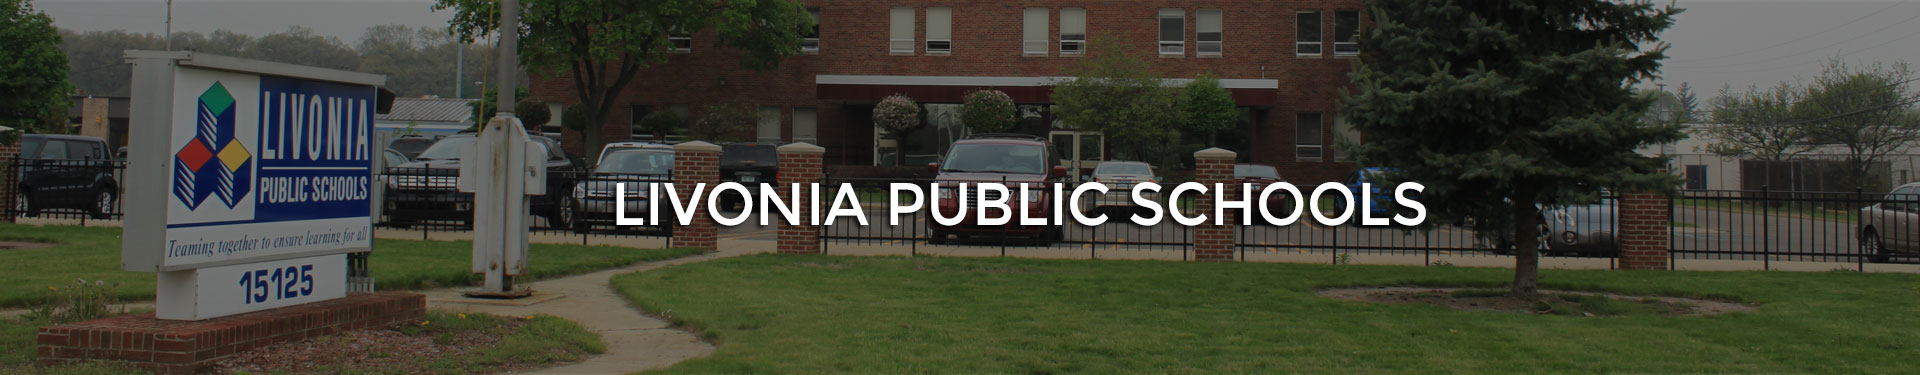 Livonia public schools website